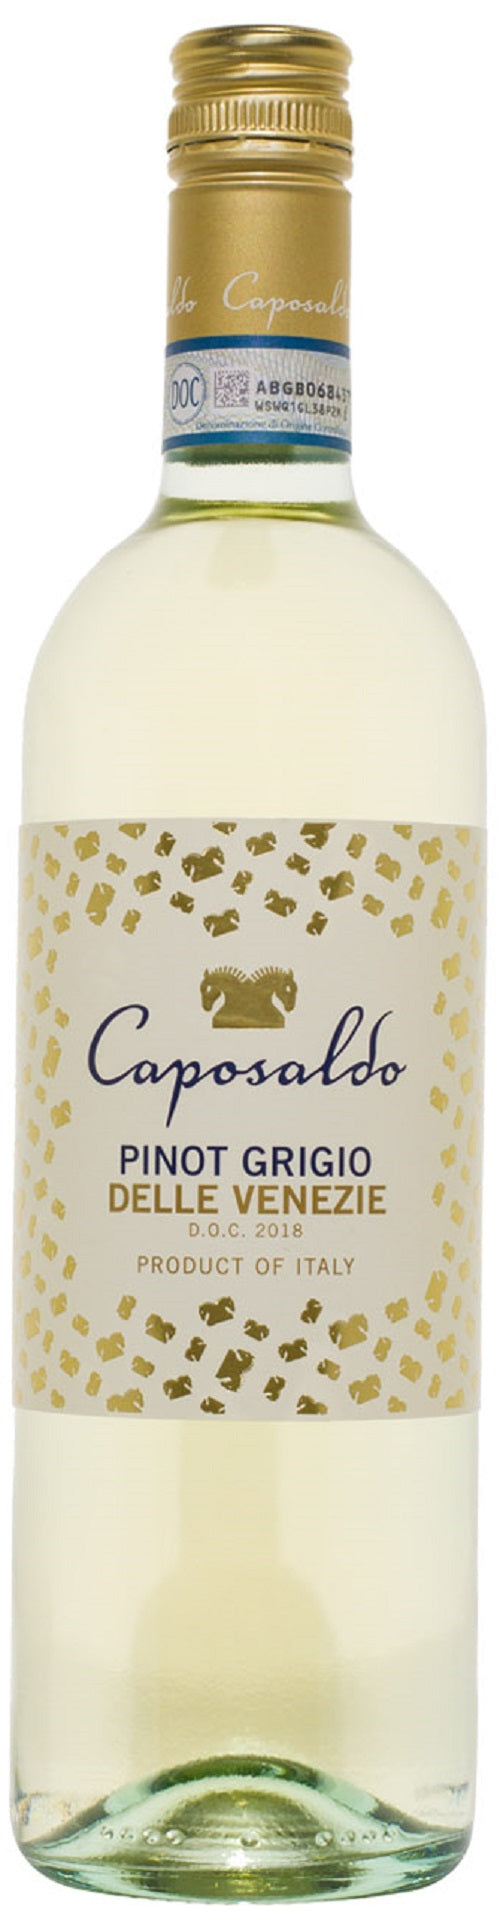 Caposaldo Pinot Grigio